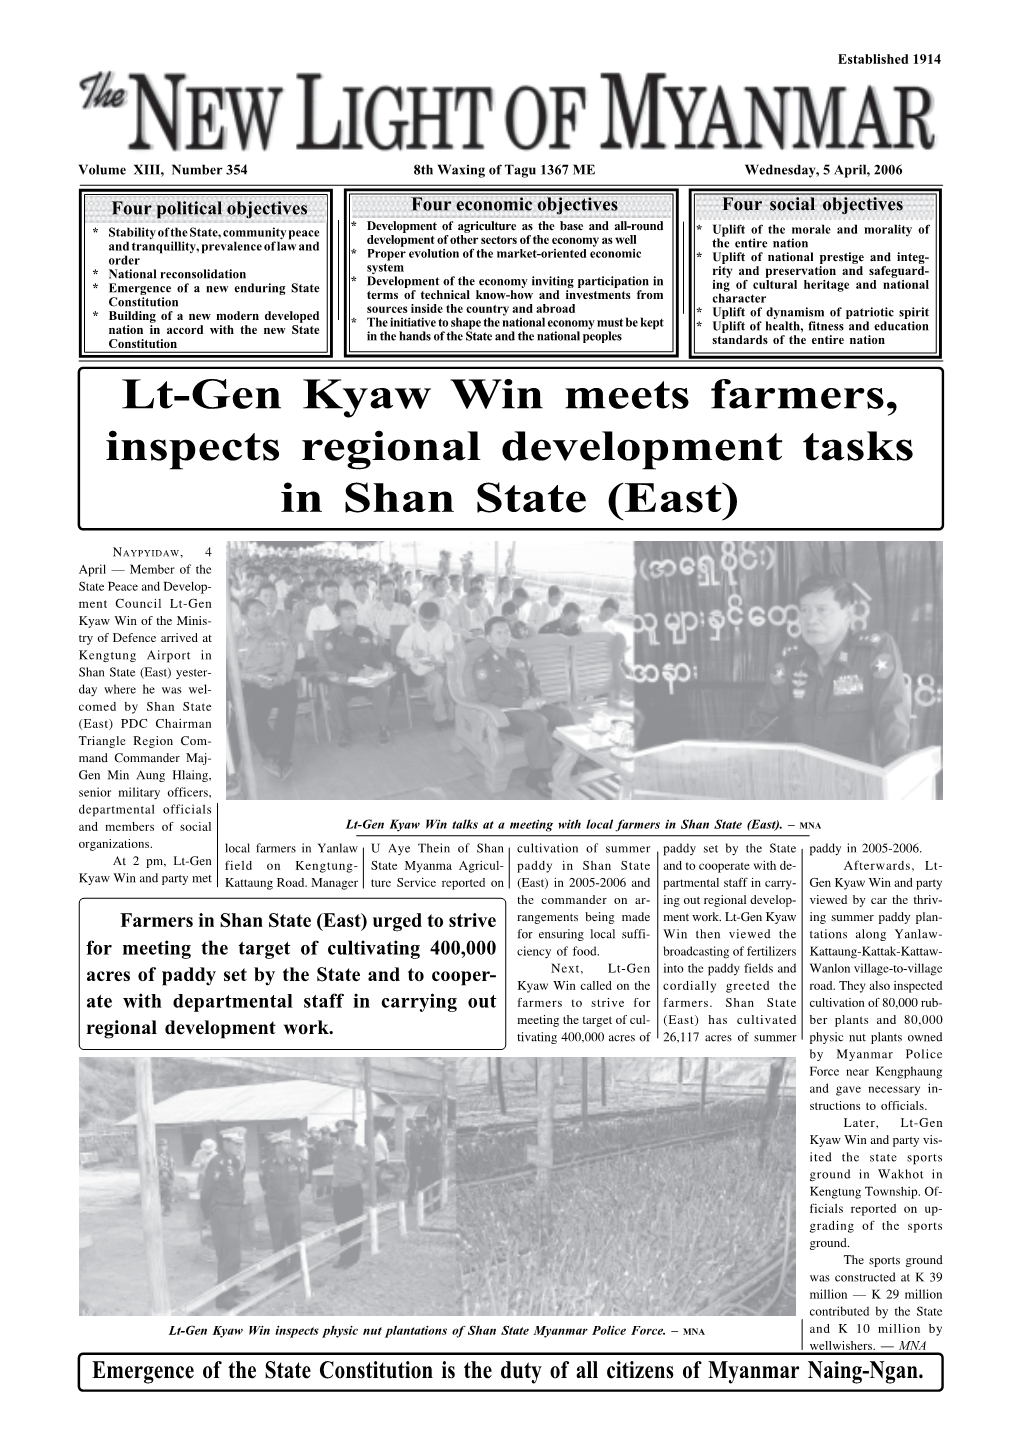 Lt-Gen Kyaw Win Meets Farmers, Inspects Regional Development Tasks in Shan State (East)